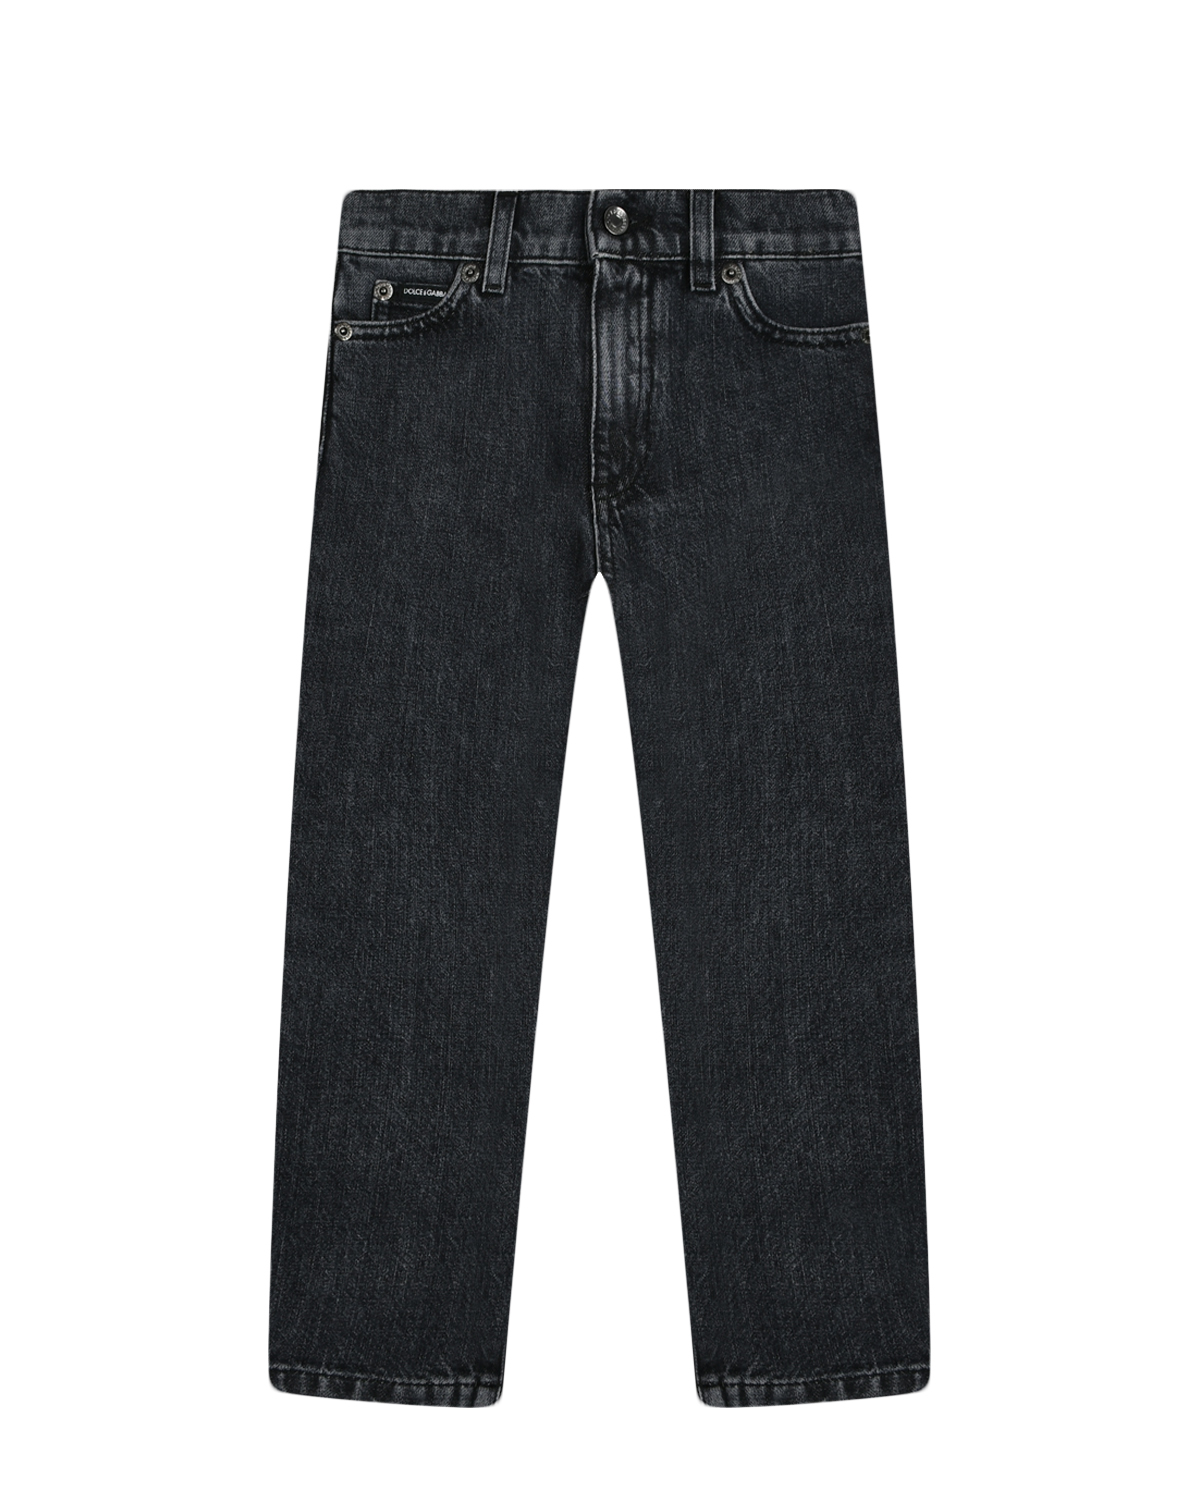 Базовые джинсы, черные Dolce&Gabbana, размер 152, цвет черный